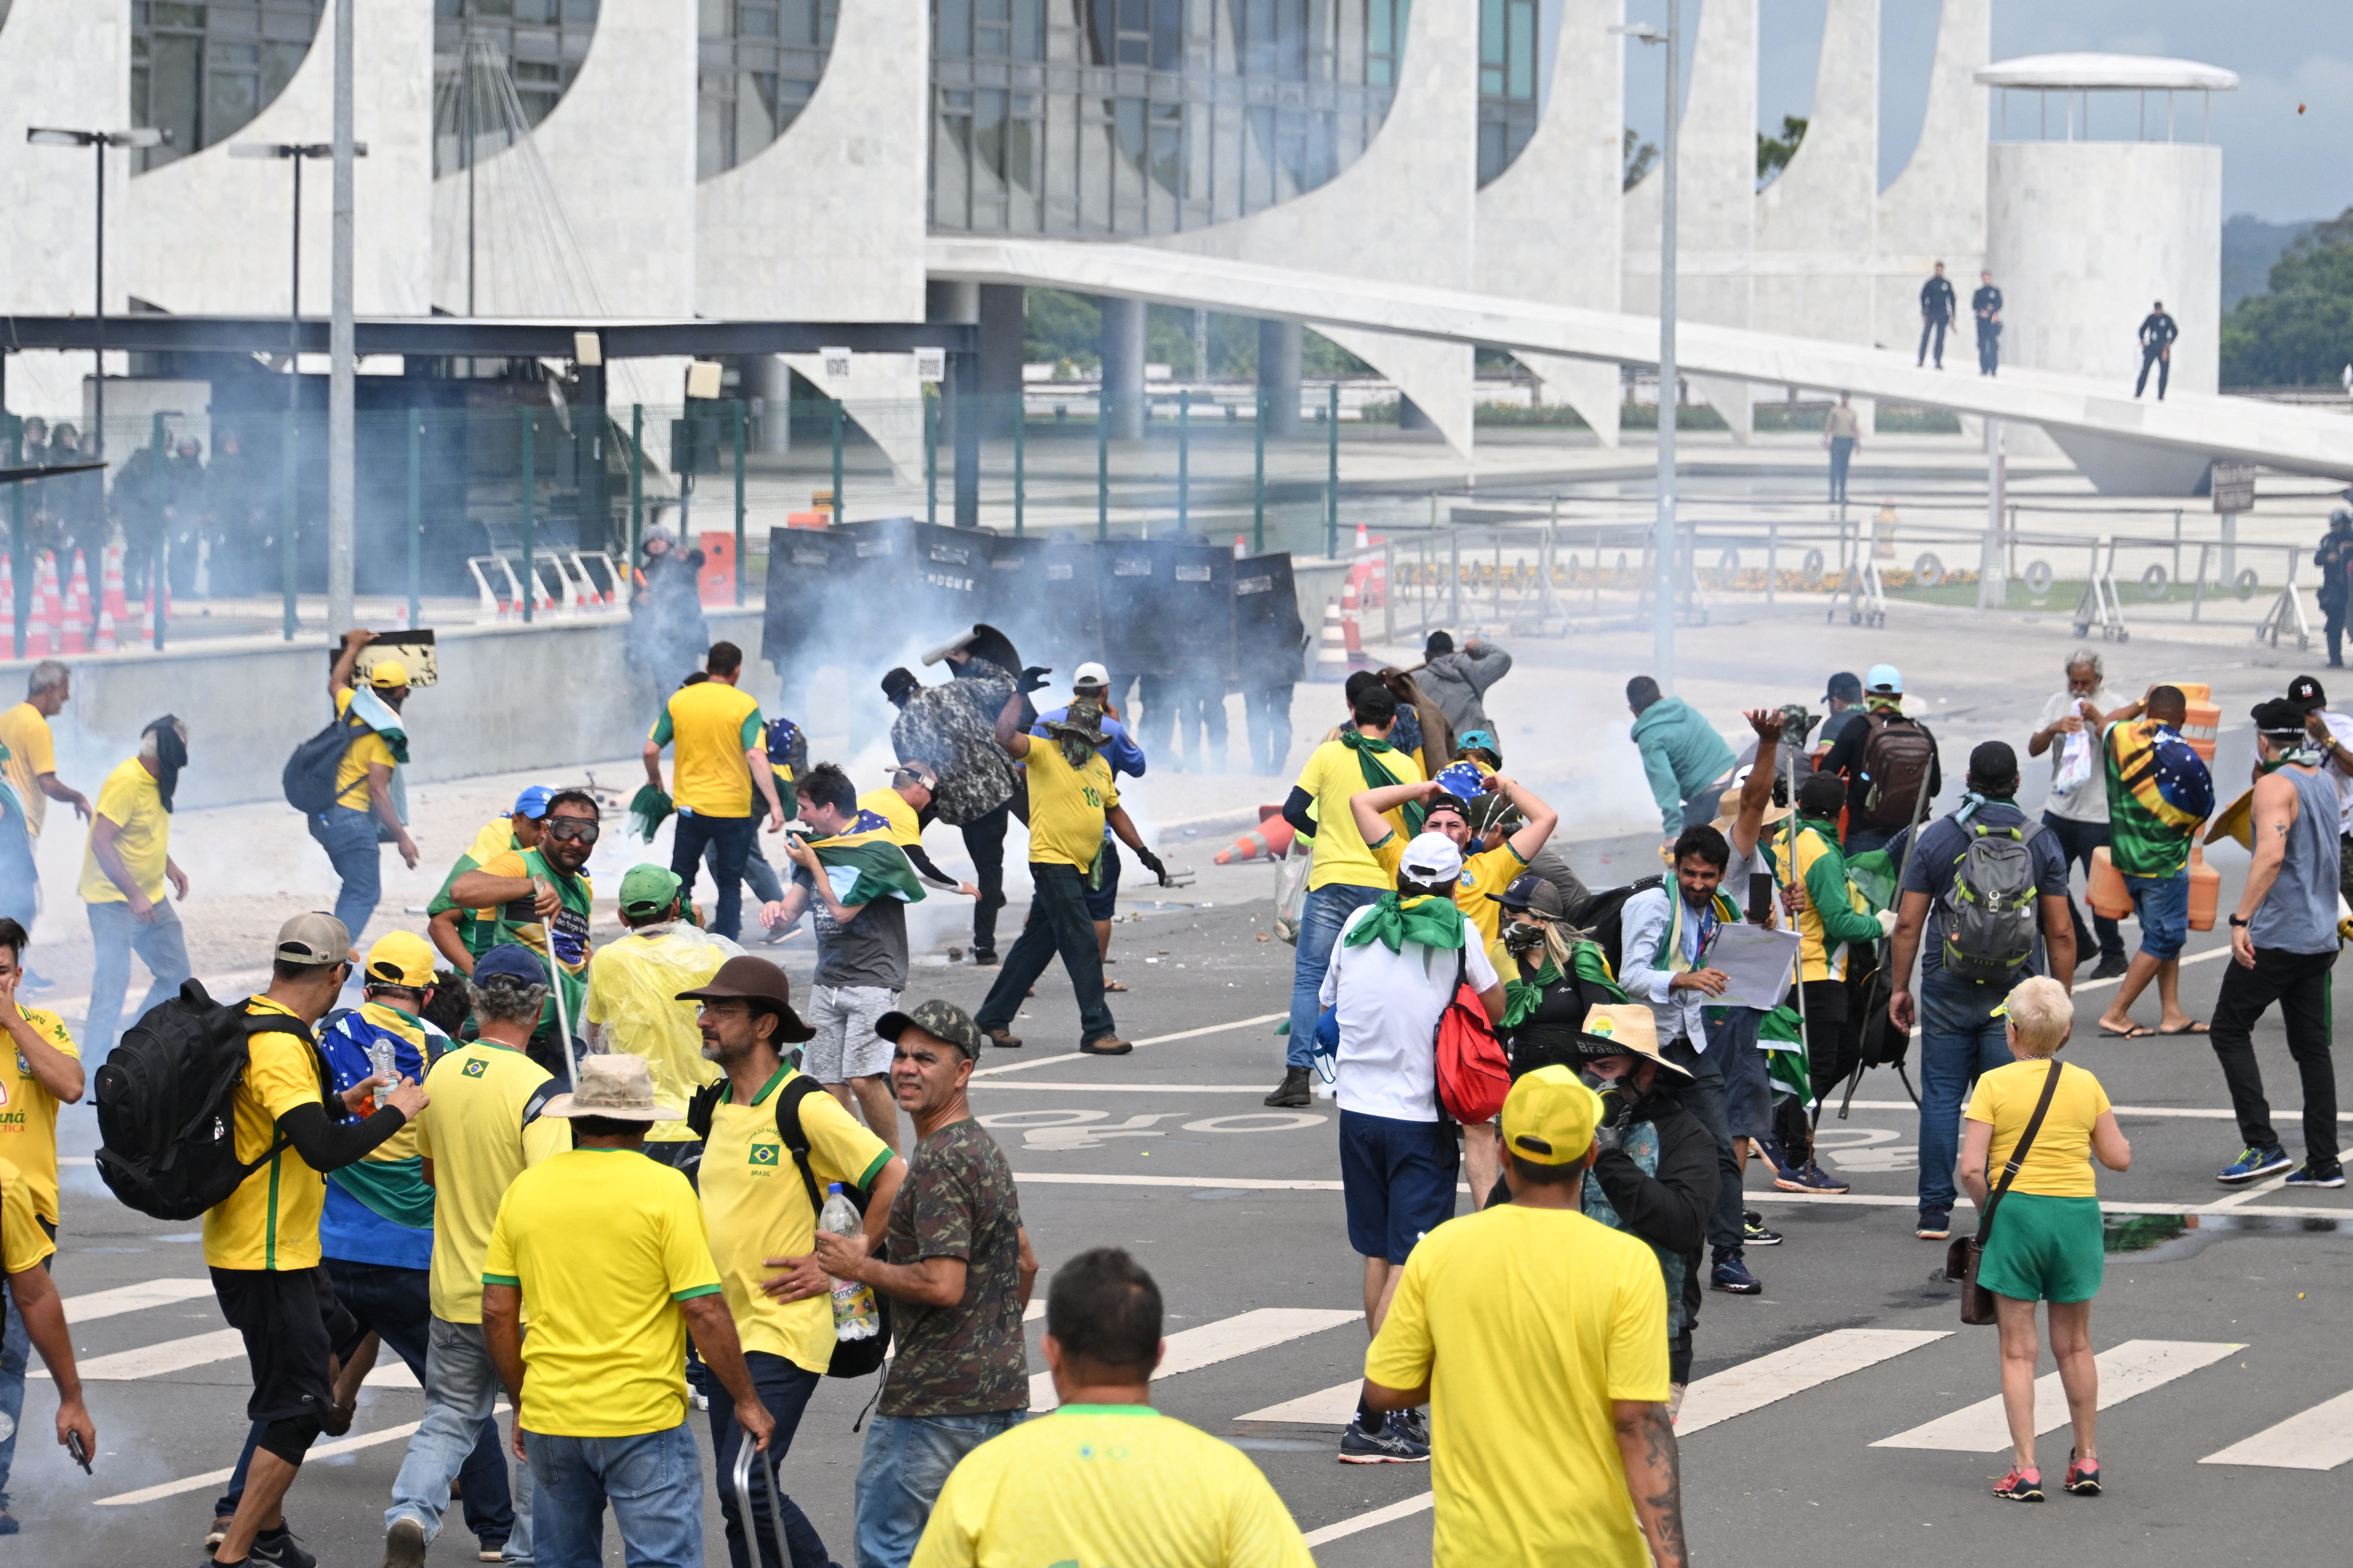 How the Brazil National Football Team Came to Symbolize Jair Bolsonaro